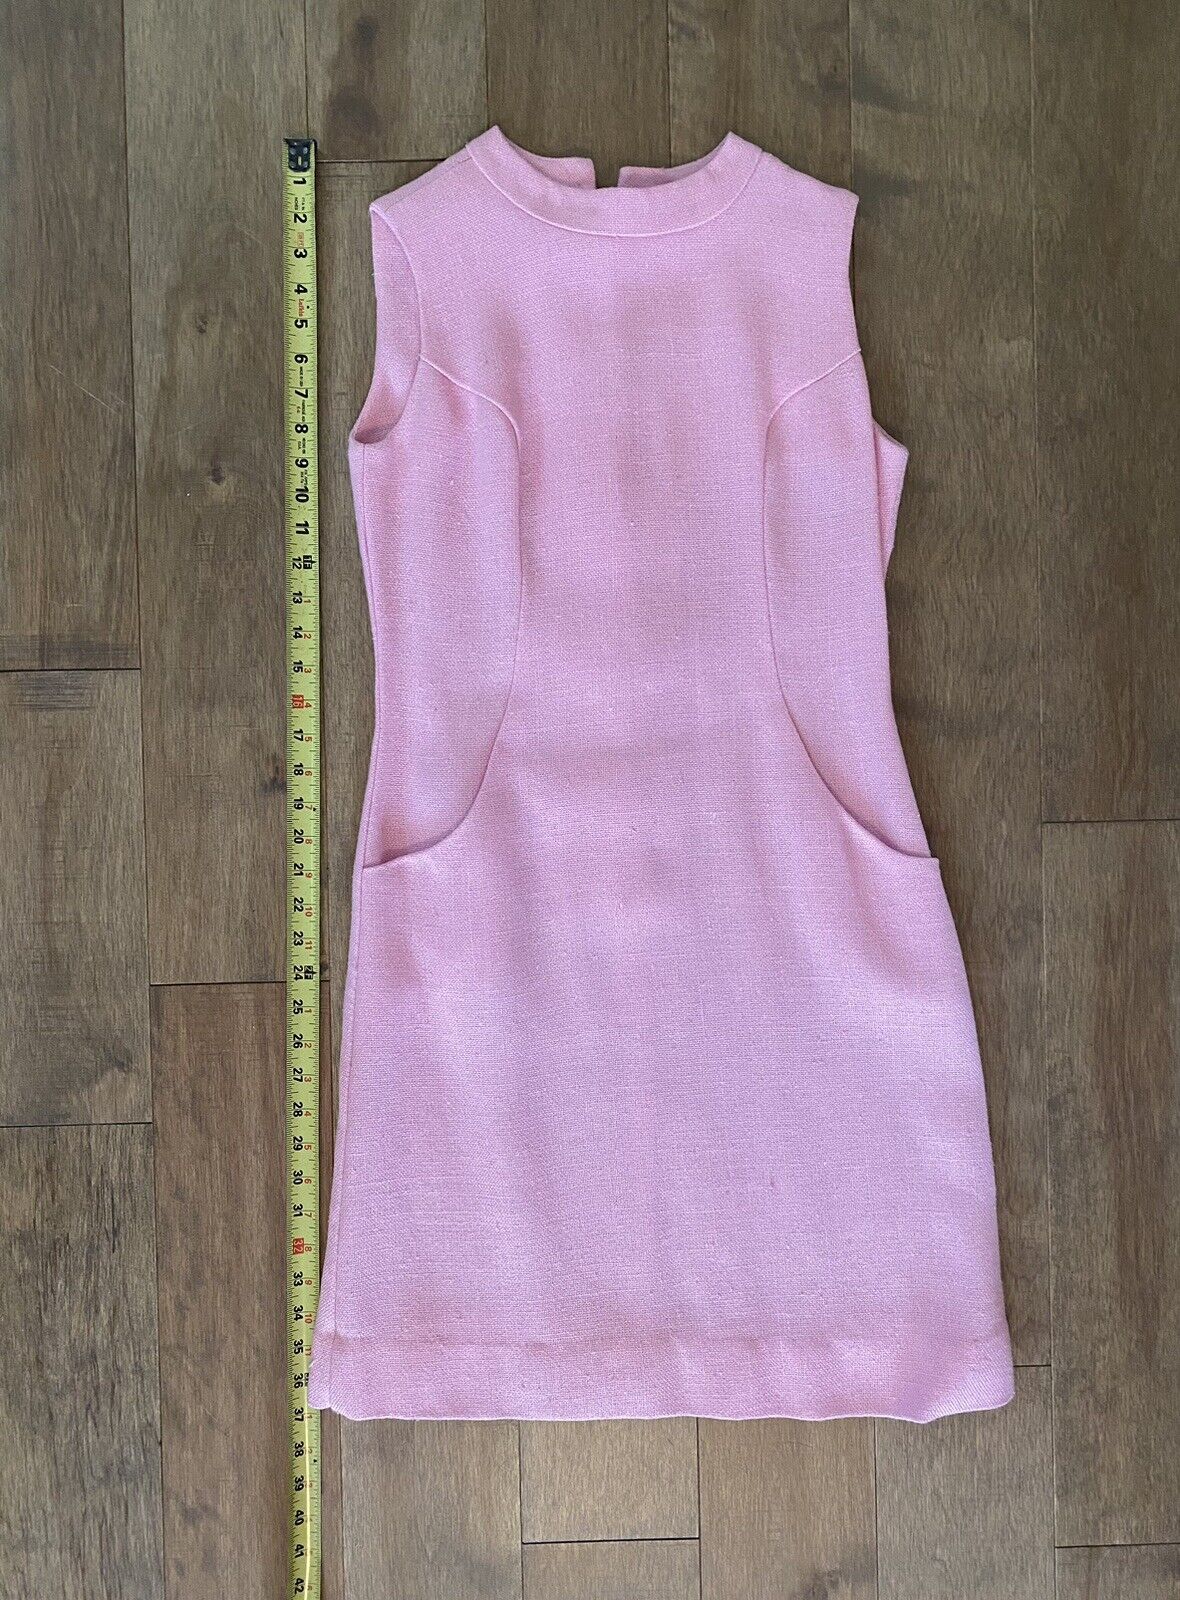 Vintage 1960s Mod Sheath Dress Size Small Light Pink Pockets